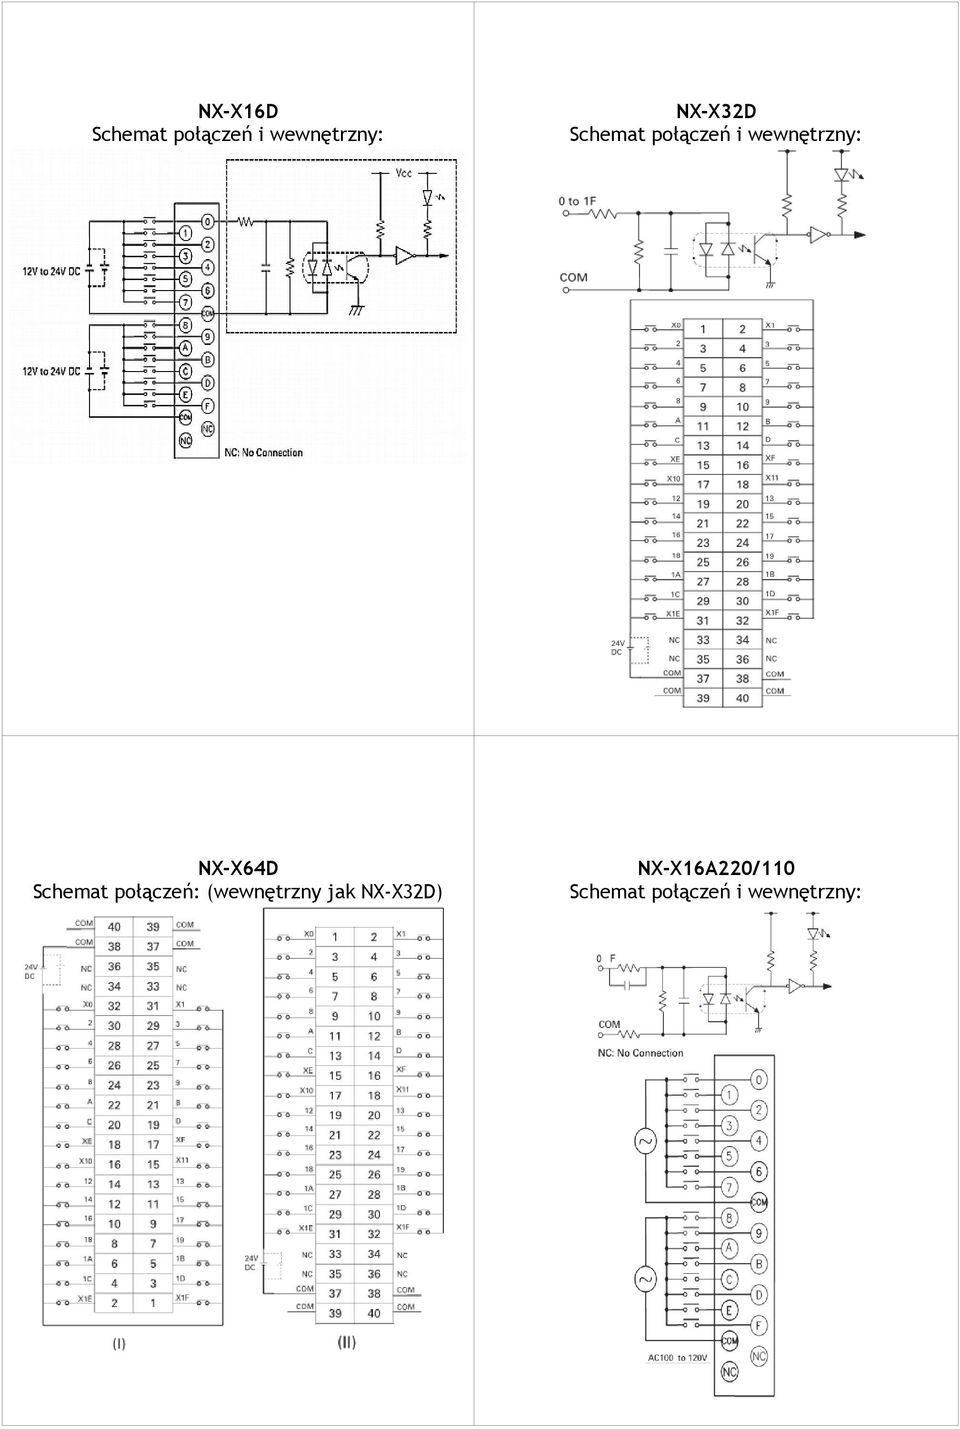 NX-X64D Schemat połączeń: (wewnętrzny jak